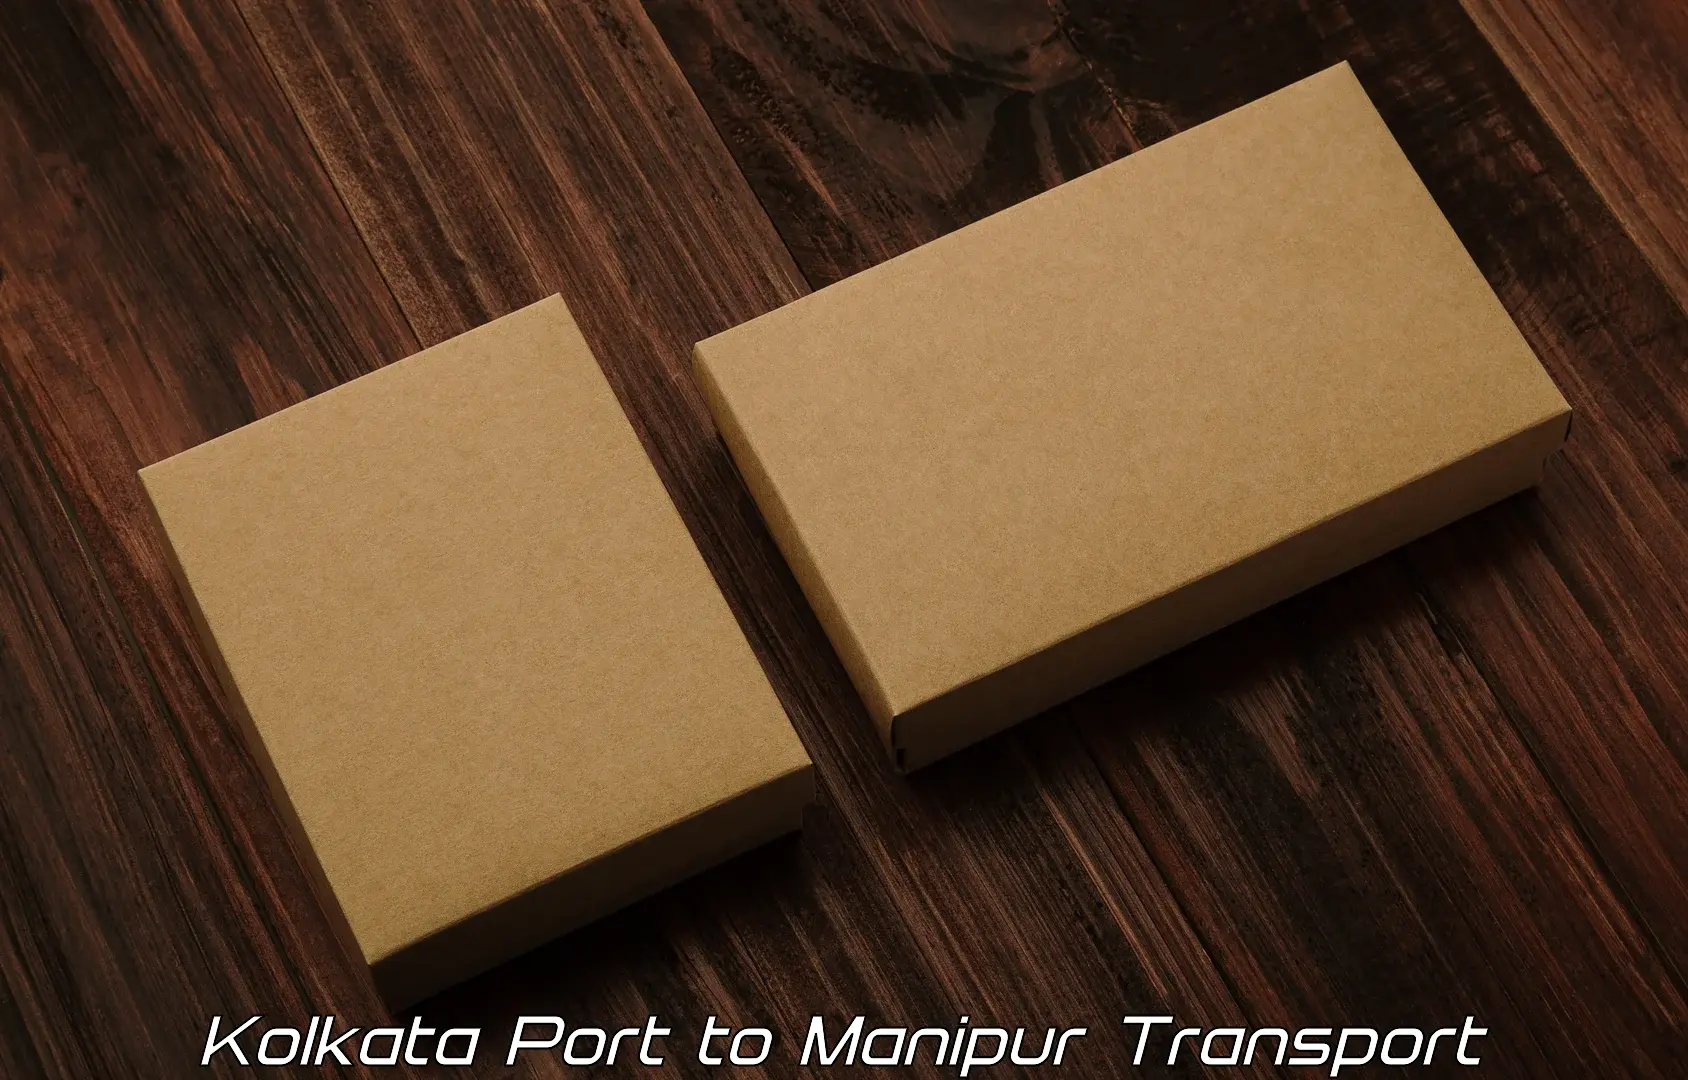 Delivery service Kolkata Port to Ukhrul